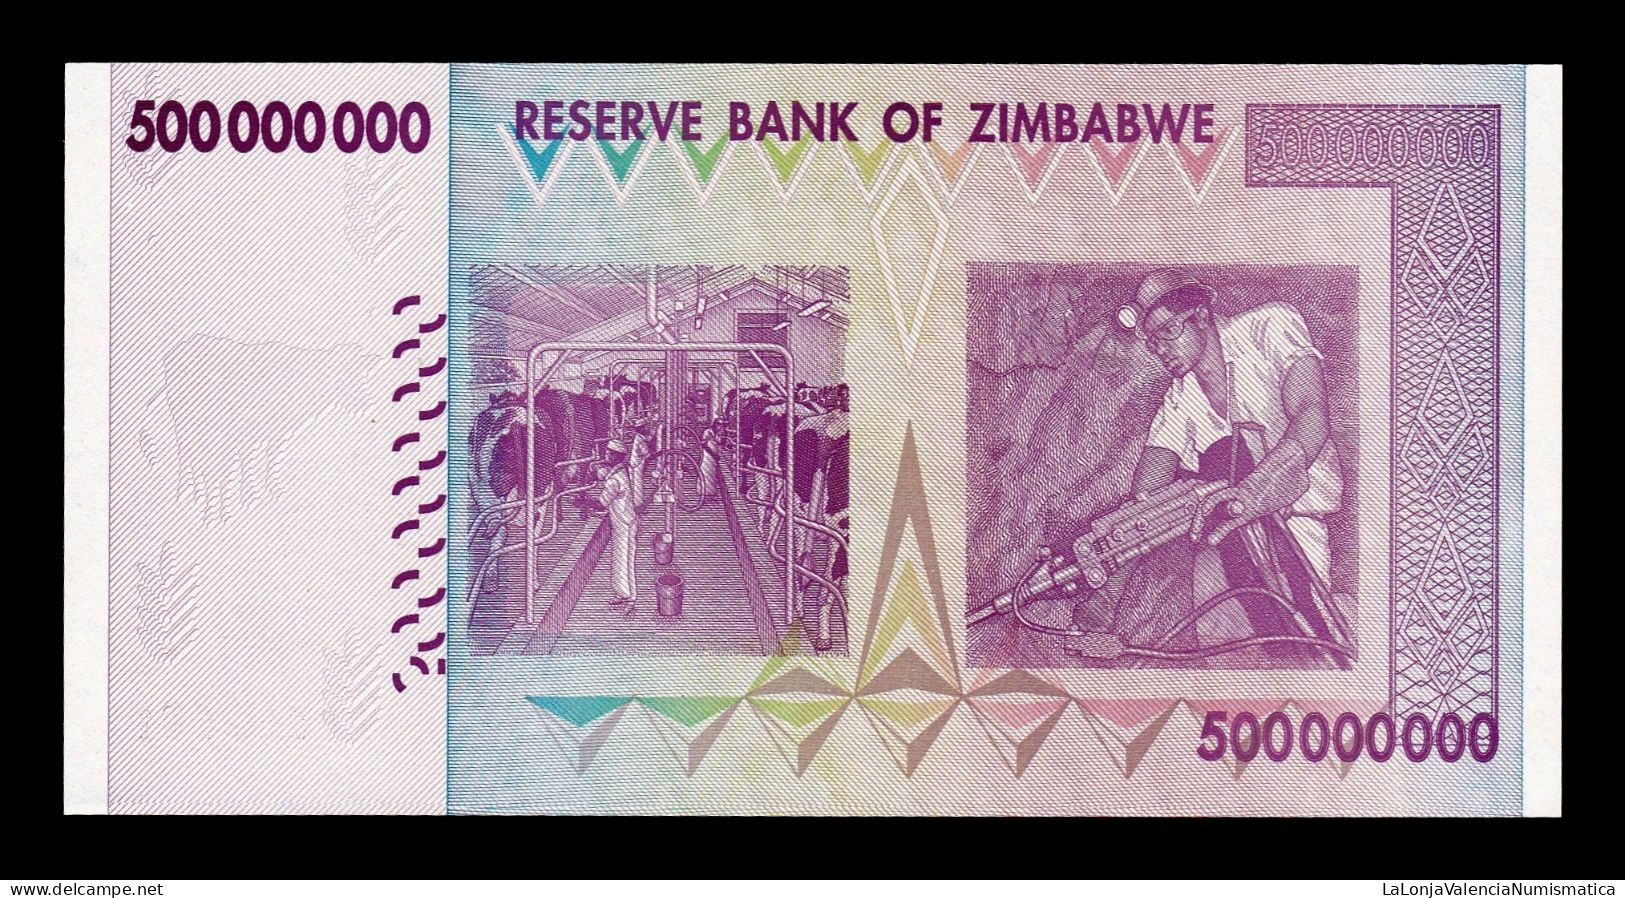 Zimbabwe 500000000 Dollars 2008 Pick 82 Serie AA Sc- AUnc - Zimbabwe